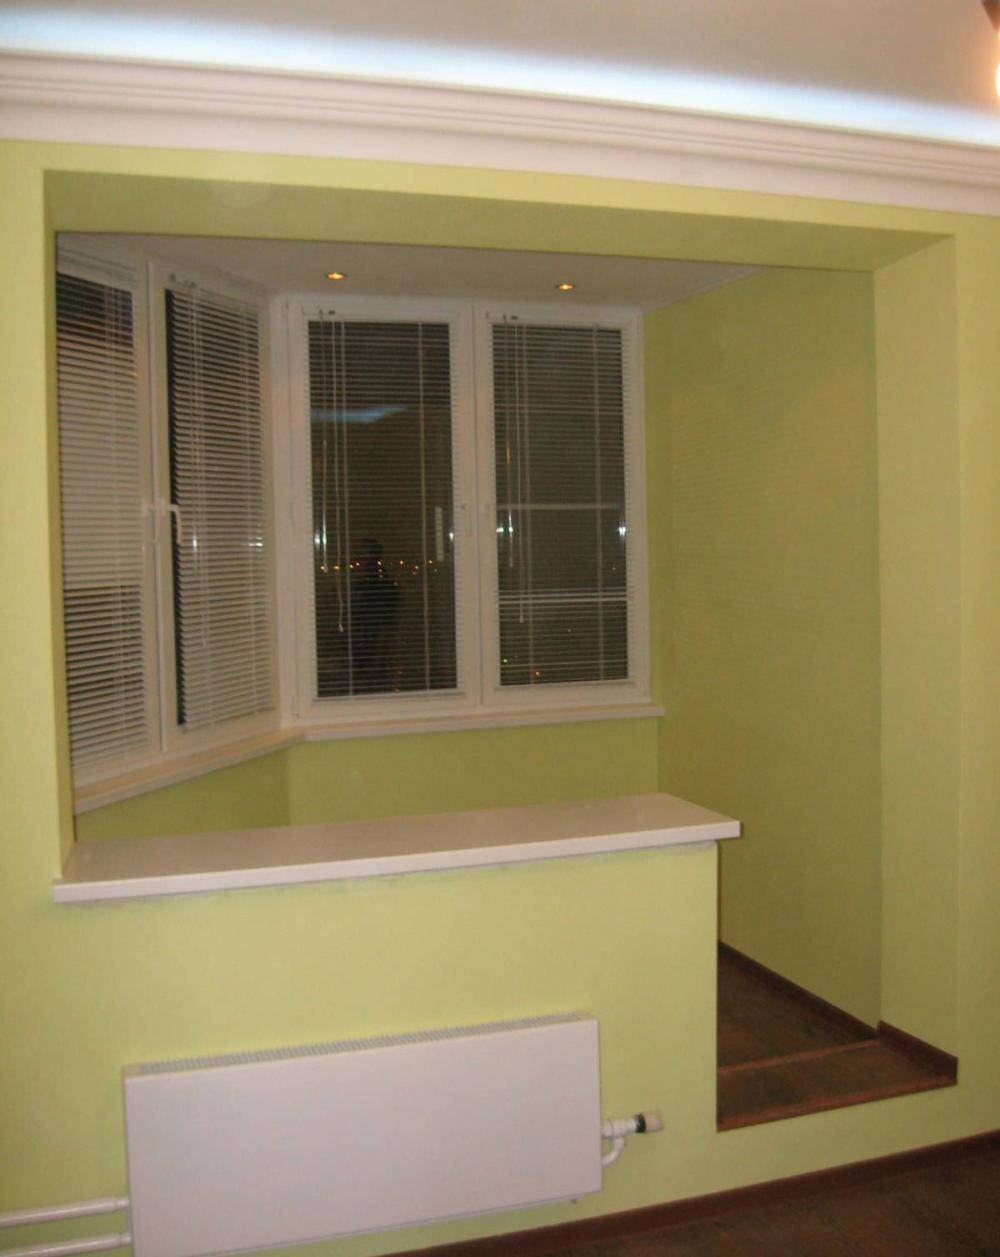 Как присоединить балкон к комнате и утеплить его - юридическая и техническая часть, особенности и рекомендации